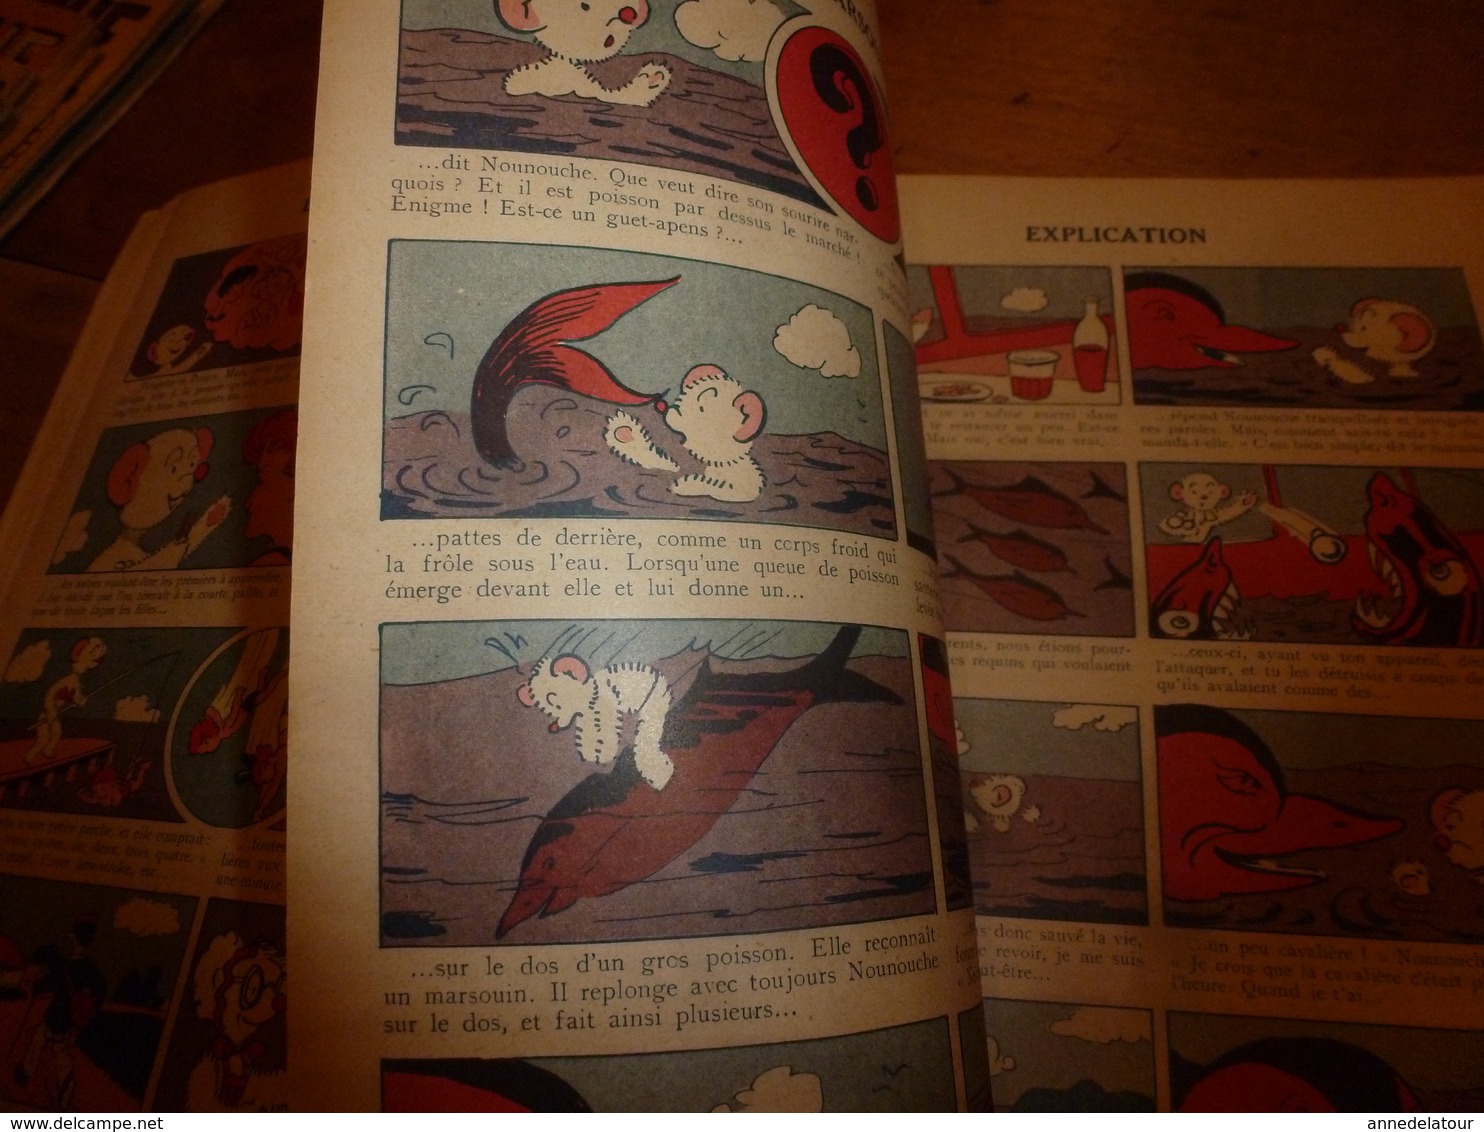 1953 NOUNOUCHE maitre-nageur,   texte et dessins de DURST